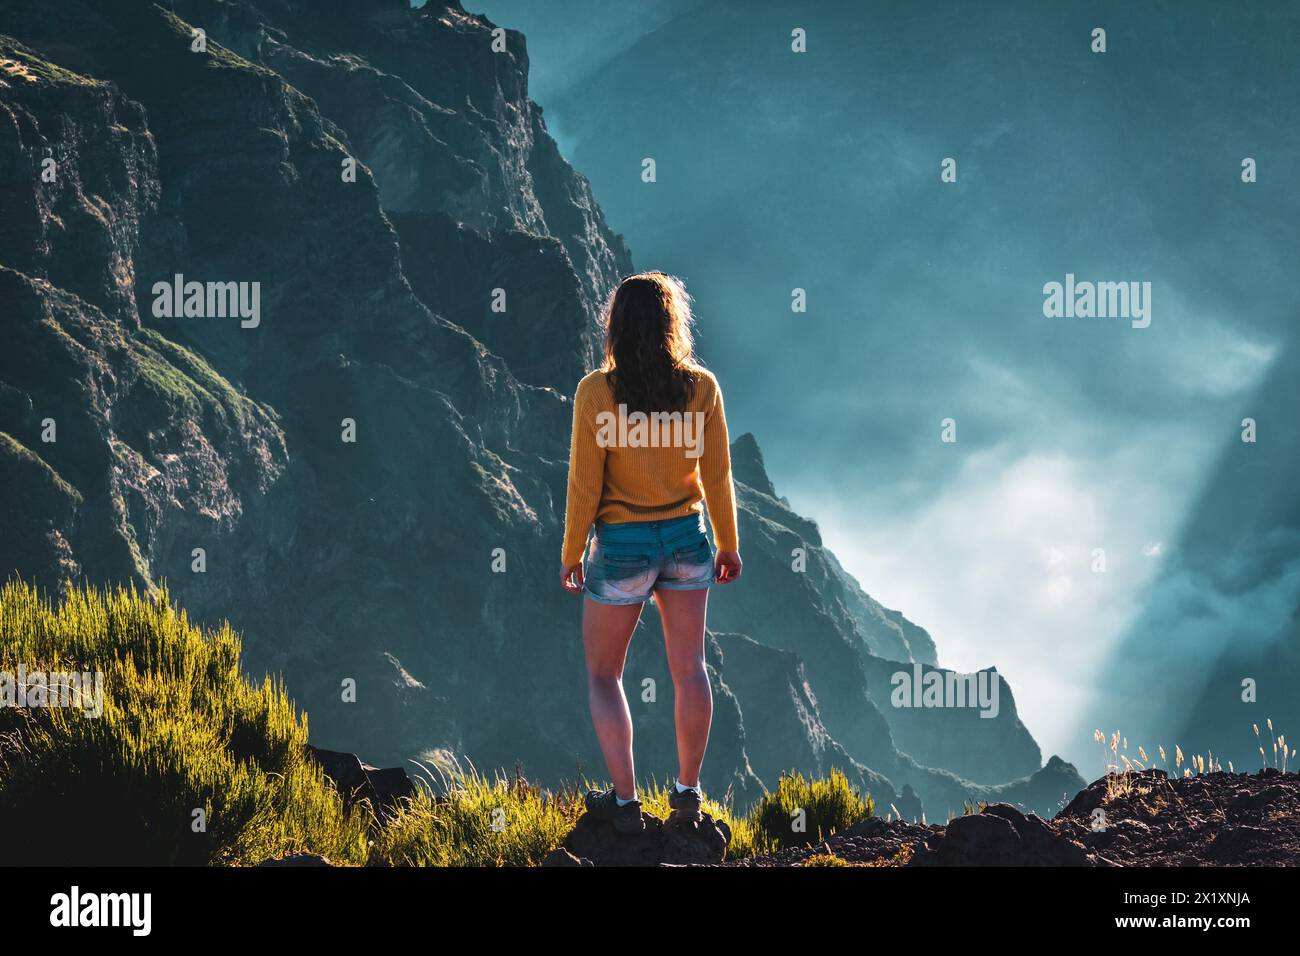 Beschreibung: Sportlicher Frauentoursit überblickt die atemberaubenden Tiefen eines wolkenbedeckten Tals und genießt den Blick auf die vulkanische Berglandschaft. Stockfoto